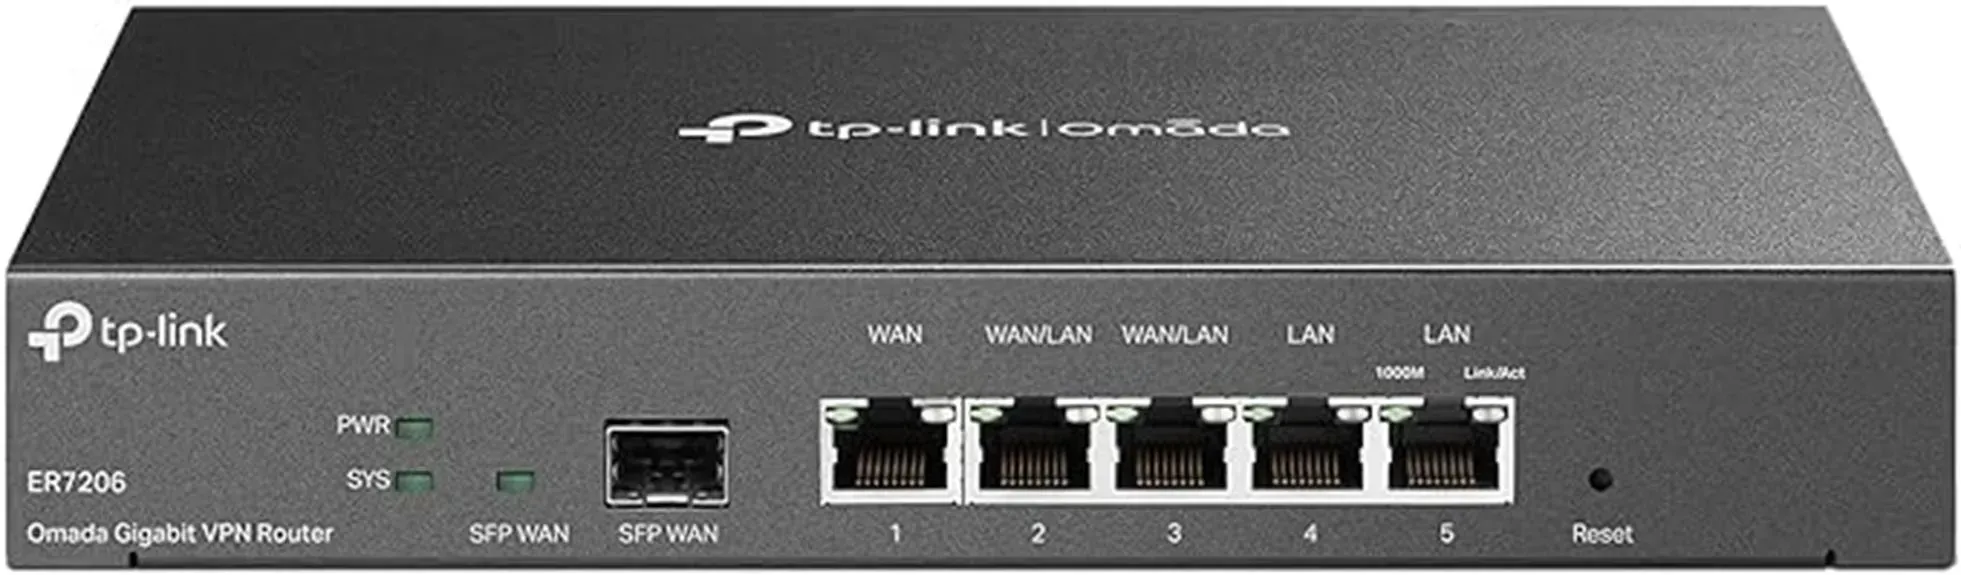 high performance vpn router model